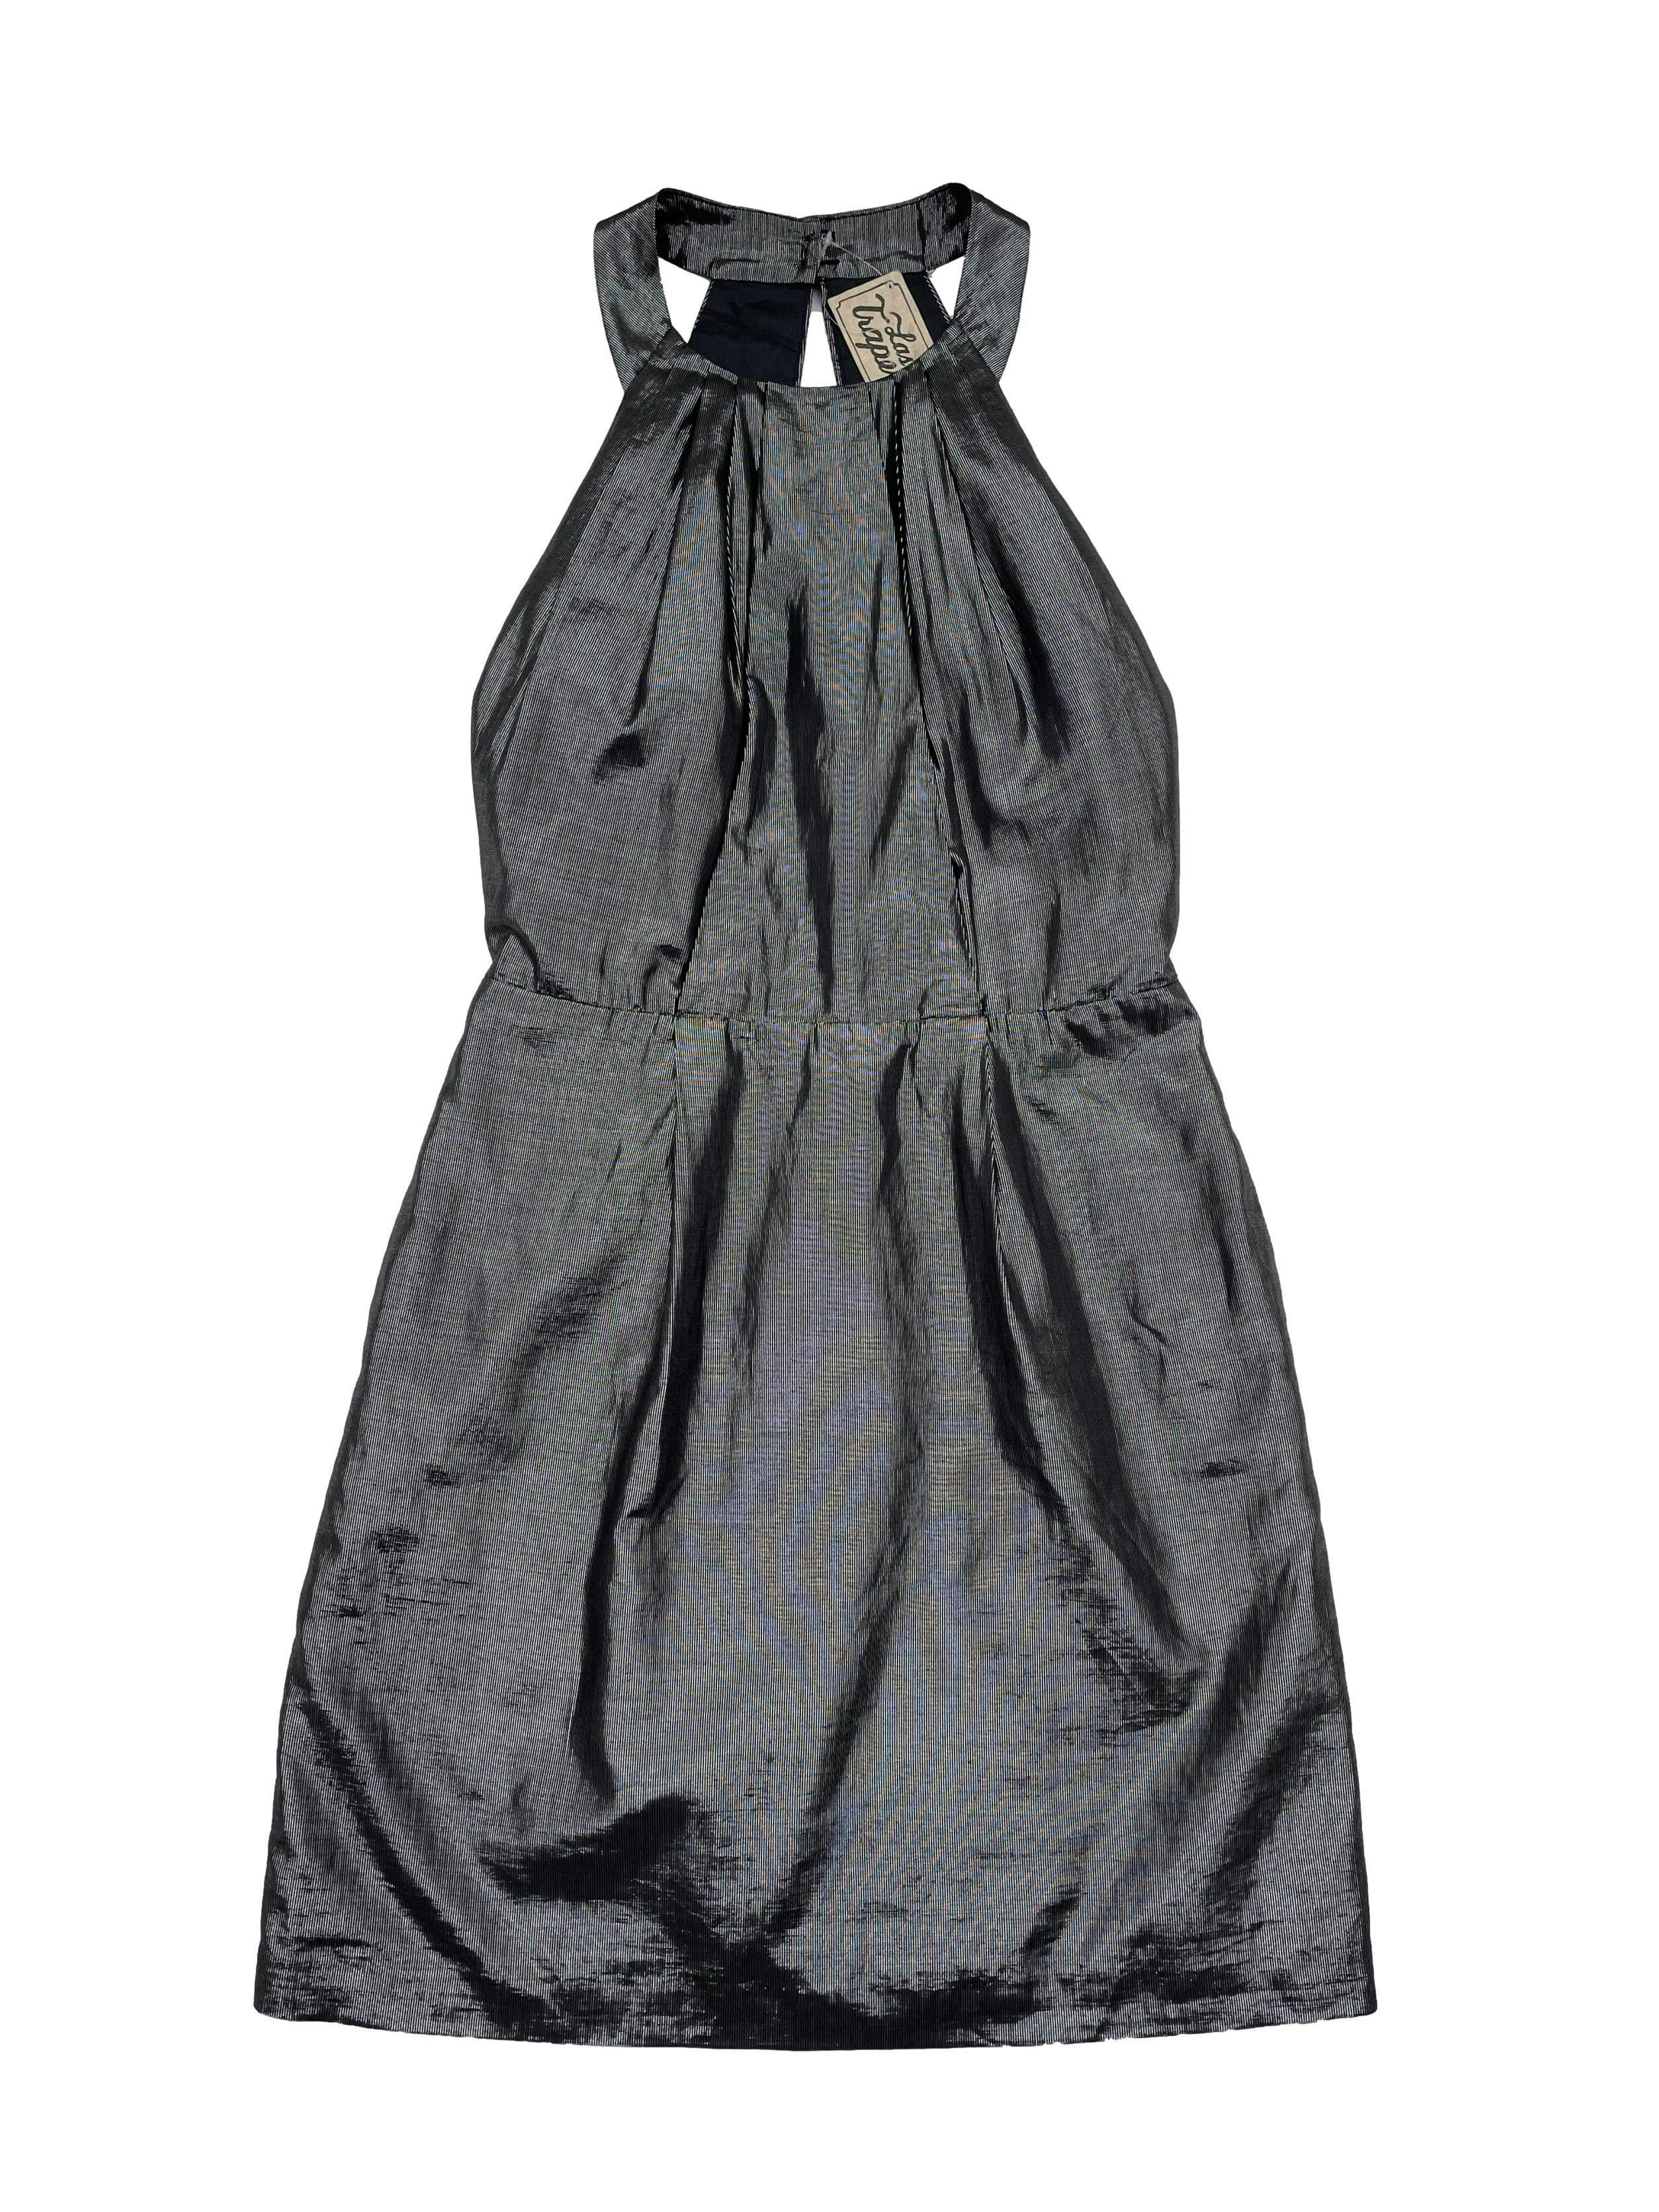 Vestido plateado mezcla de algodón y metallic, forrado, botón posterior en el cuello, espalda abierta y cierre posterior. Cintura 66cm Largo 82cm